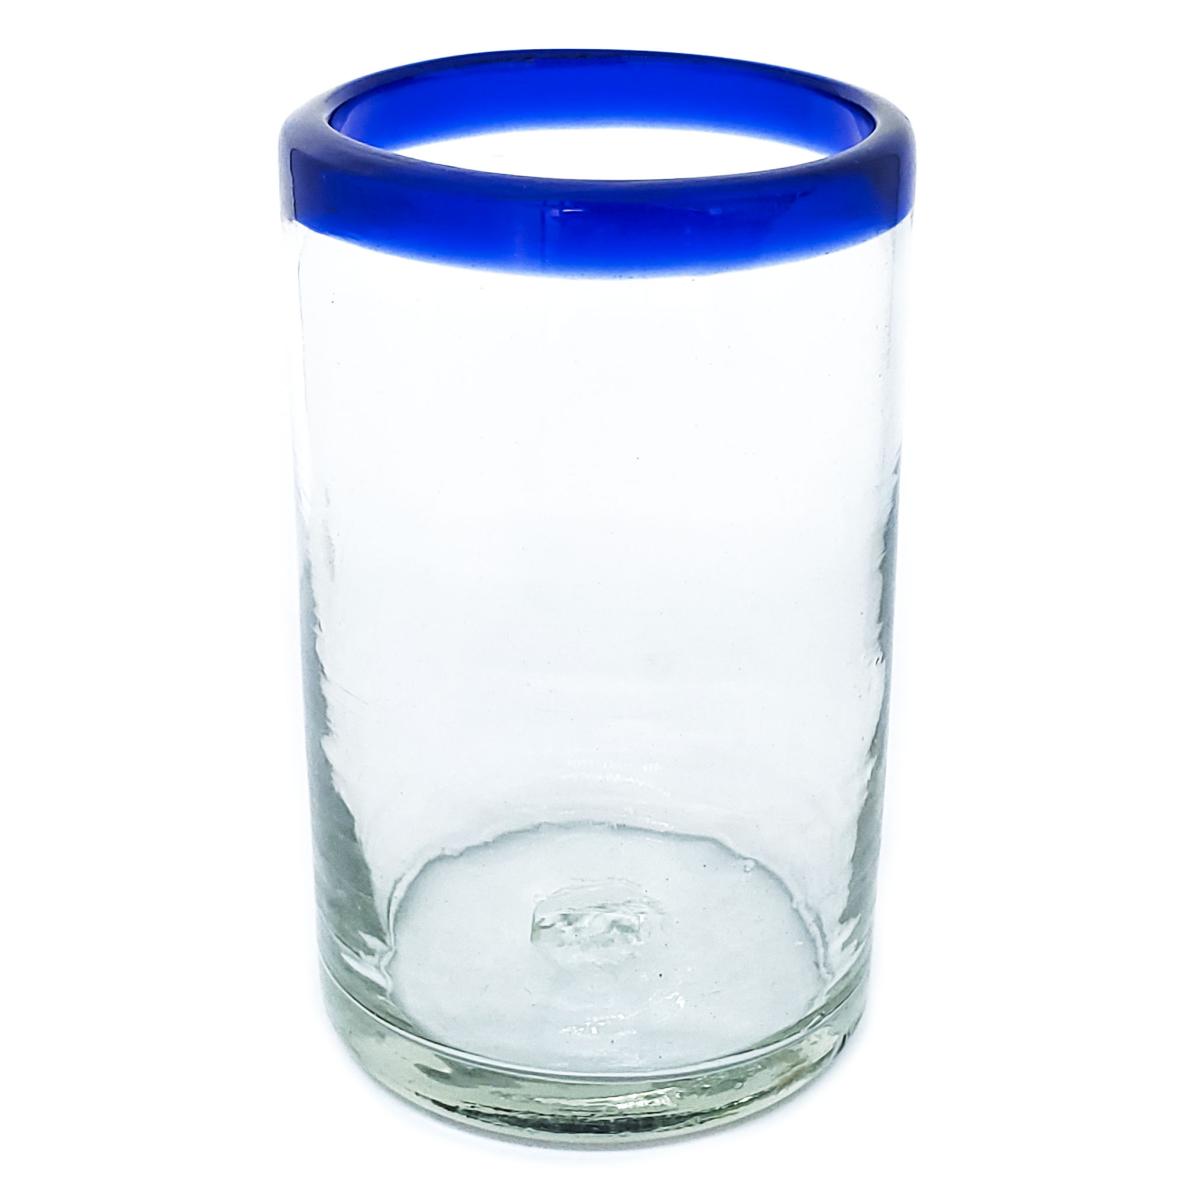 Ofertas / vasos grandes con borde azul cobalto, 14 oz, Vidrio Reciclado, Libre de Plomo y Toxinas / stos artesanales vasos le darn un toque clsico a su bebida favorita.